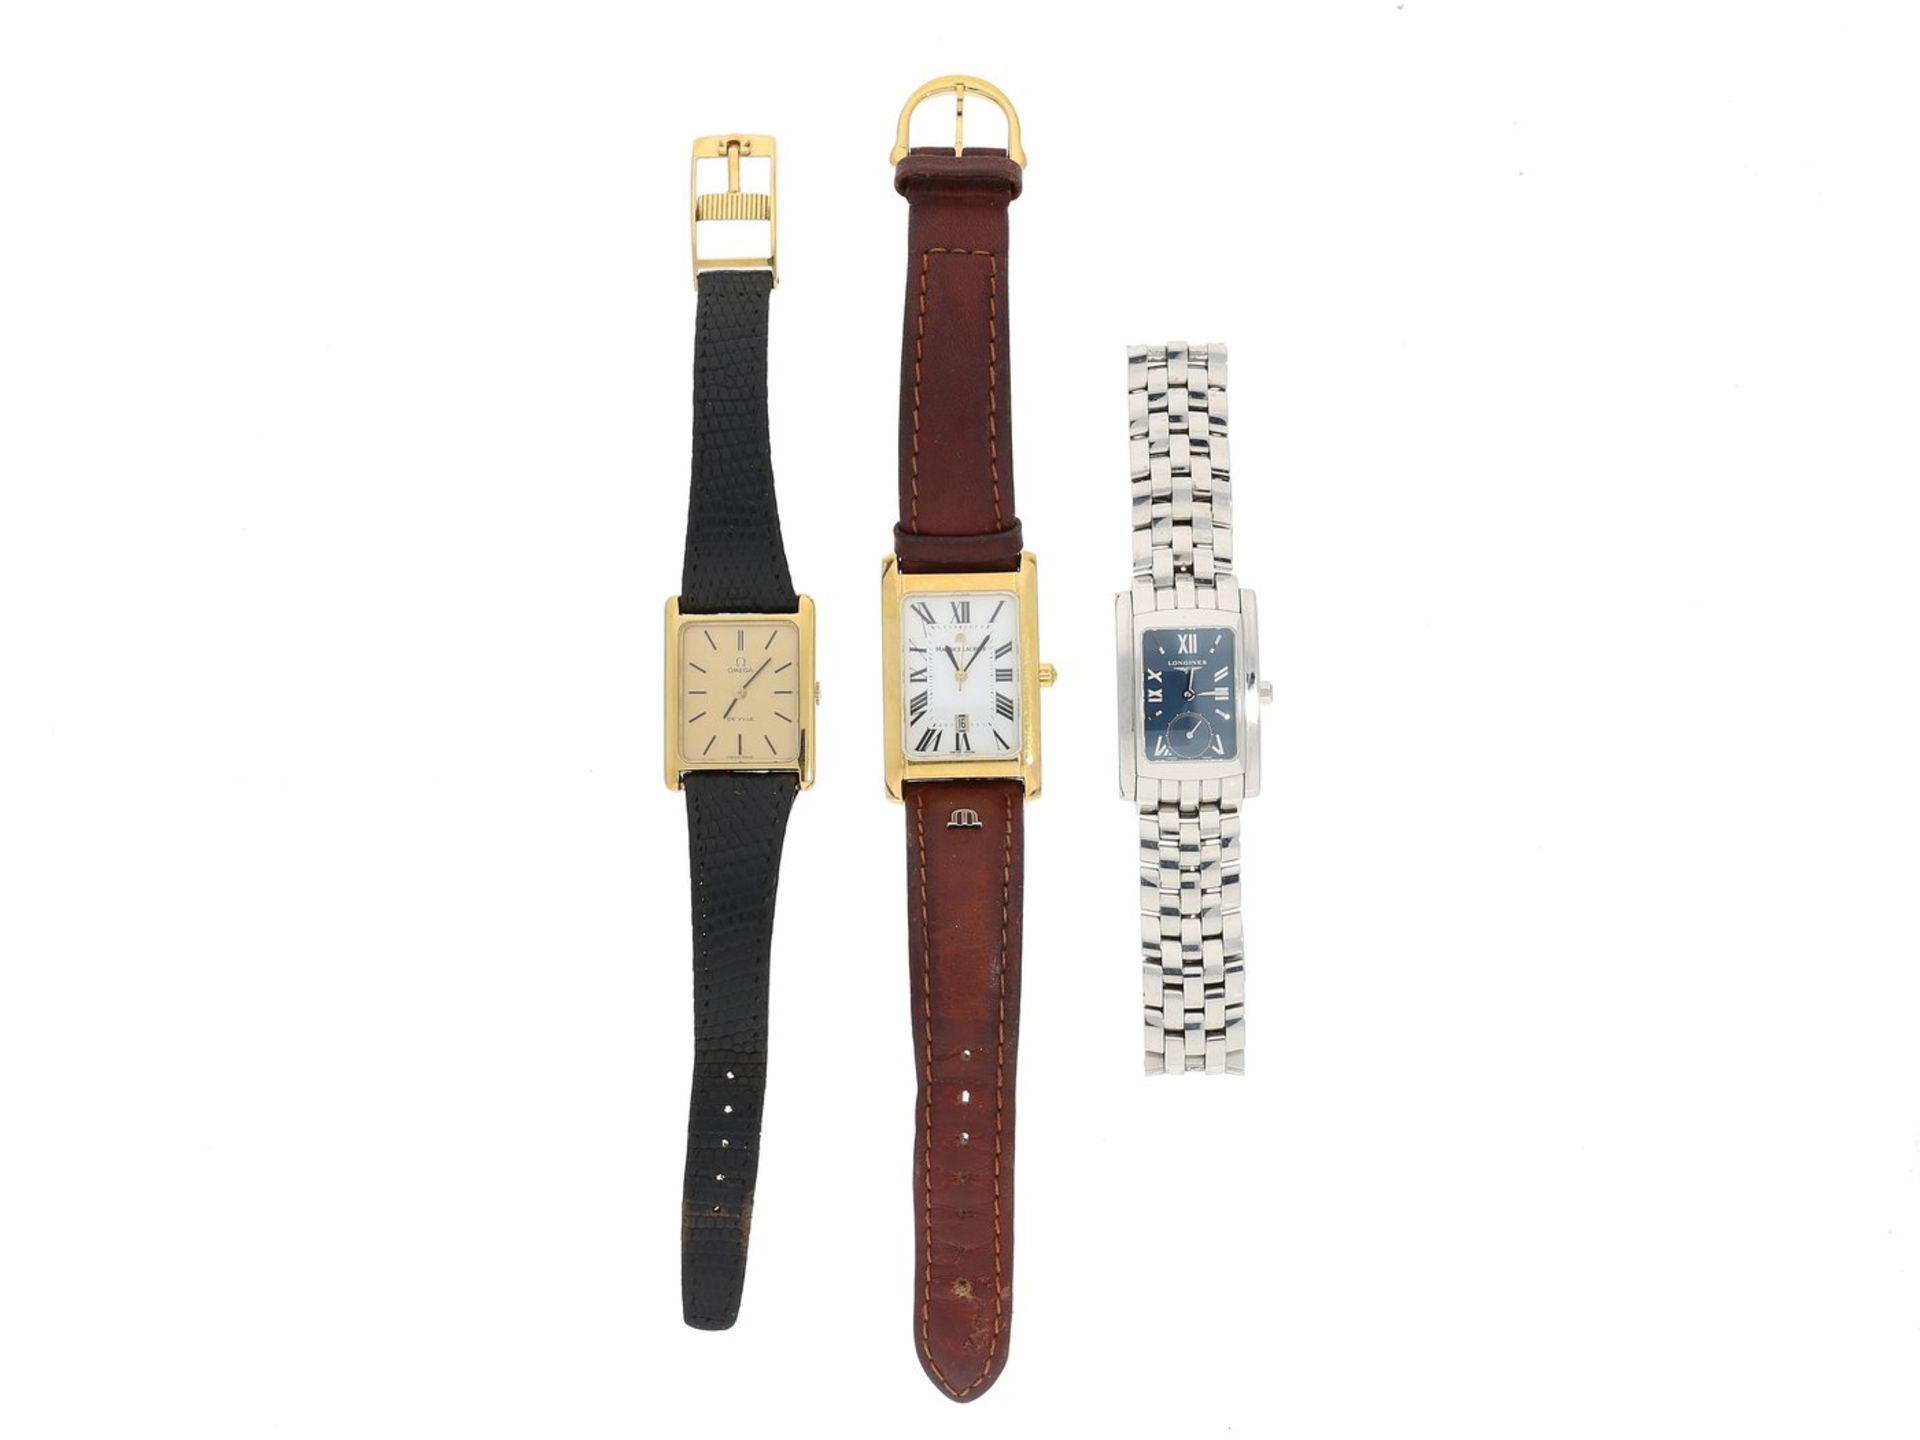 Armbanduhr: Konvolut von 3 hochwertigen Herrenuhren/Damenuhren, Markenuhren1. Longines Edelstahl,